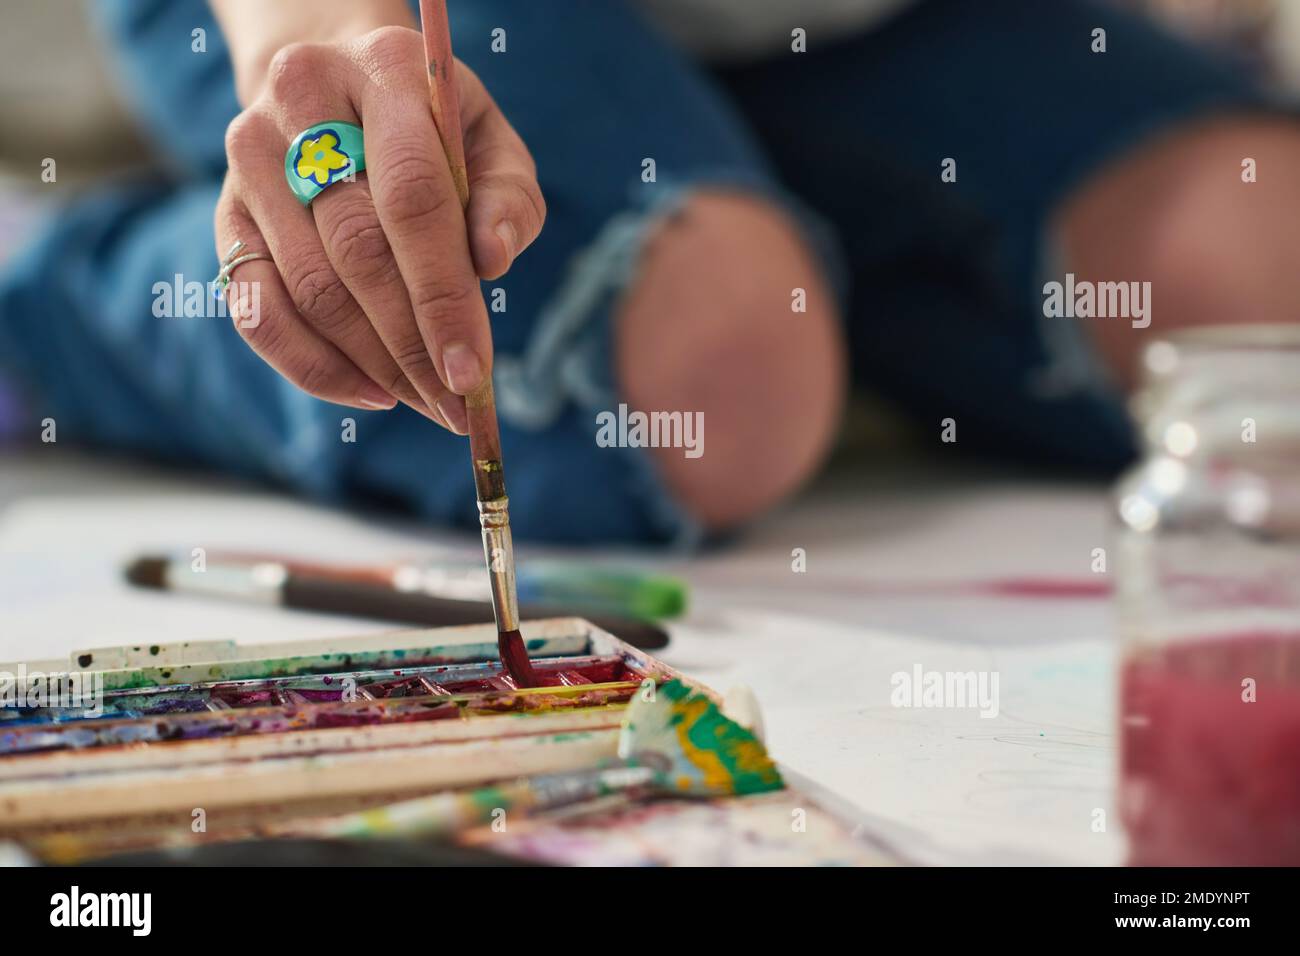 Konzentrieren Sie sich auf die Hand einer jungen kreativen Frau mit dem Bijou-Ring, der den Pinsel in Aquarellfarben legt, während er auf dem Boden der Werkstatt sitzt und Kunstwerke kreiert Stockfoto